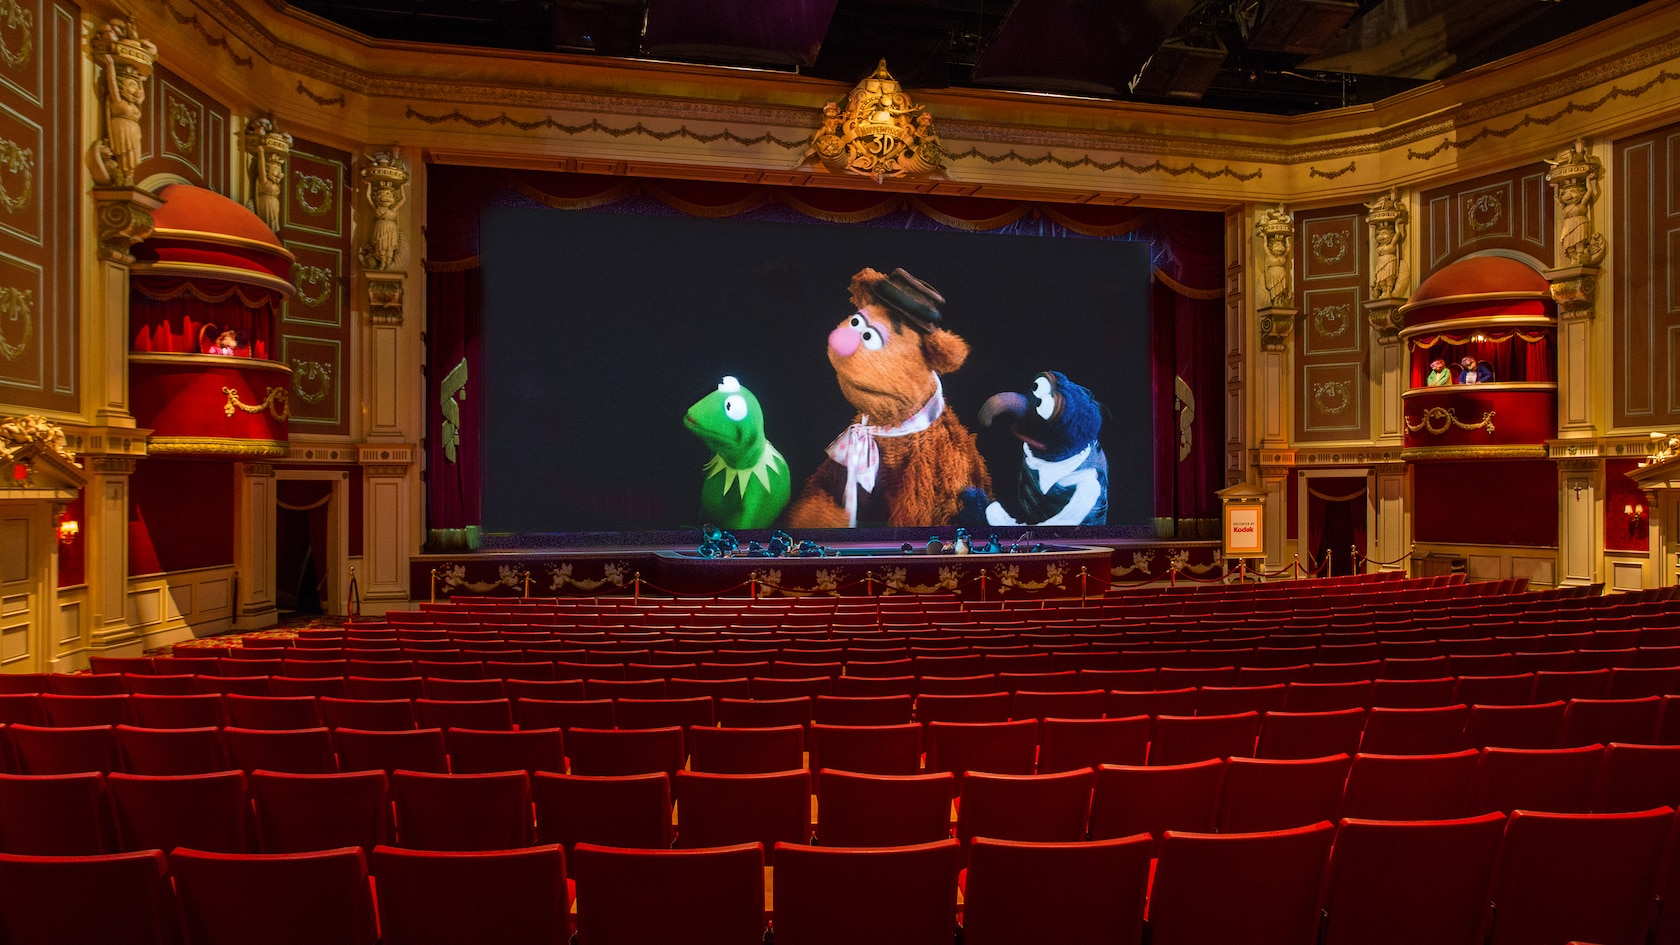 Muppet Vision 3D - Atracción de Hollywood Studios